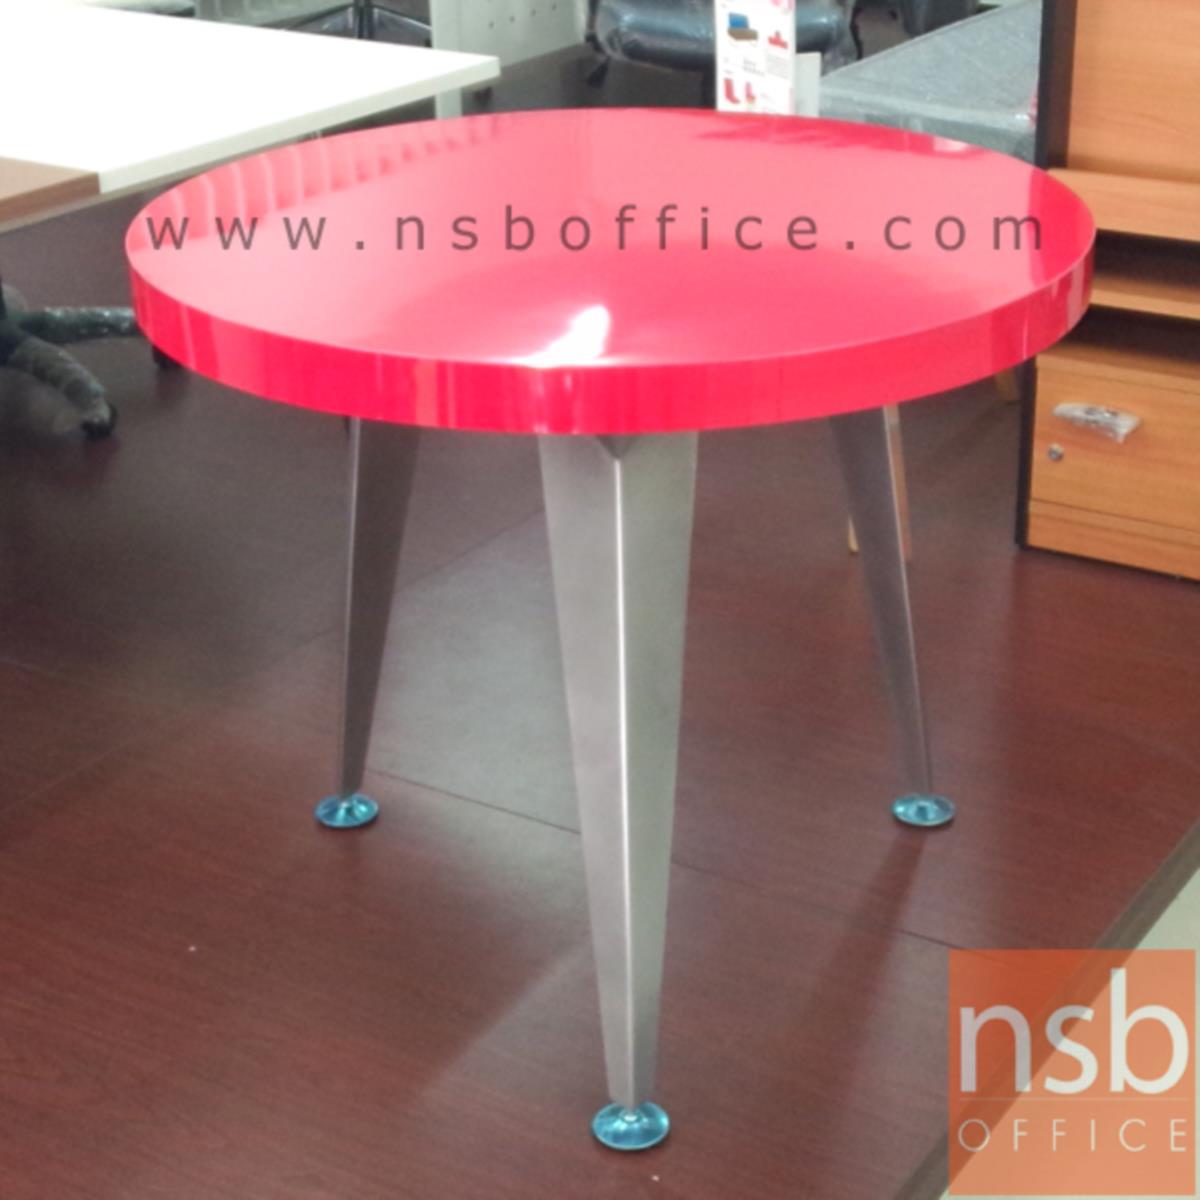 A25A005:โต๊ะหน้าลามิเนตสีแดงเงา รุ่น Bickford (บิคฟอร์ด) ขนาด 90Di cm.  โครงขาเหล็ก Clearance-มีสต็อก 1 ตัว